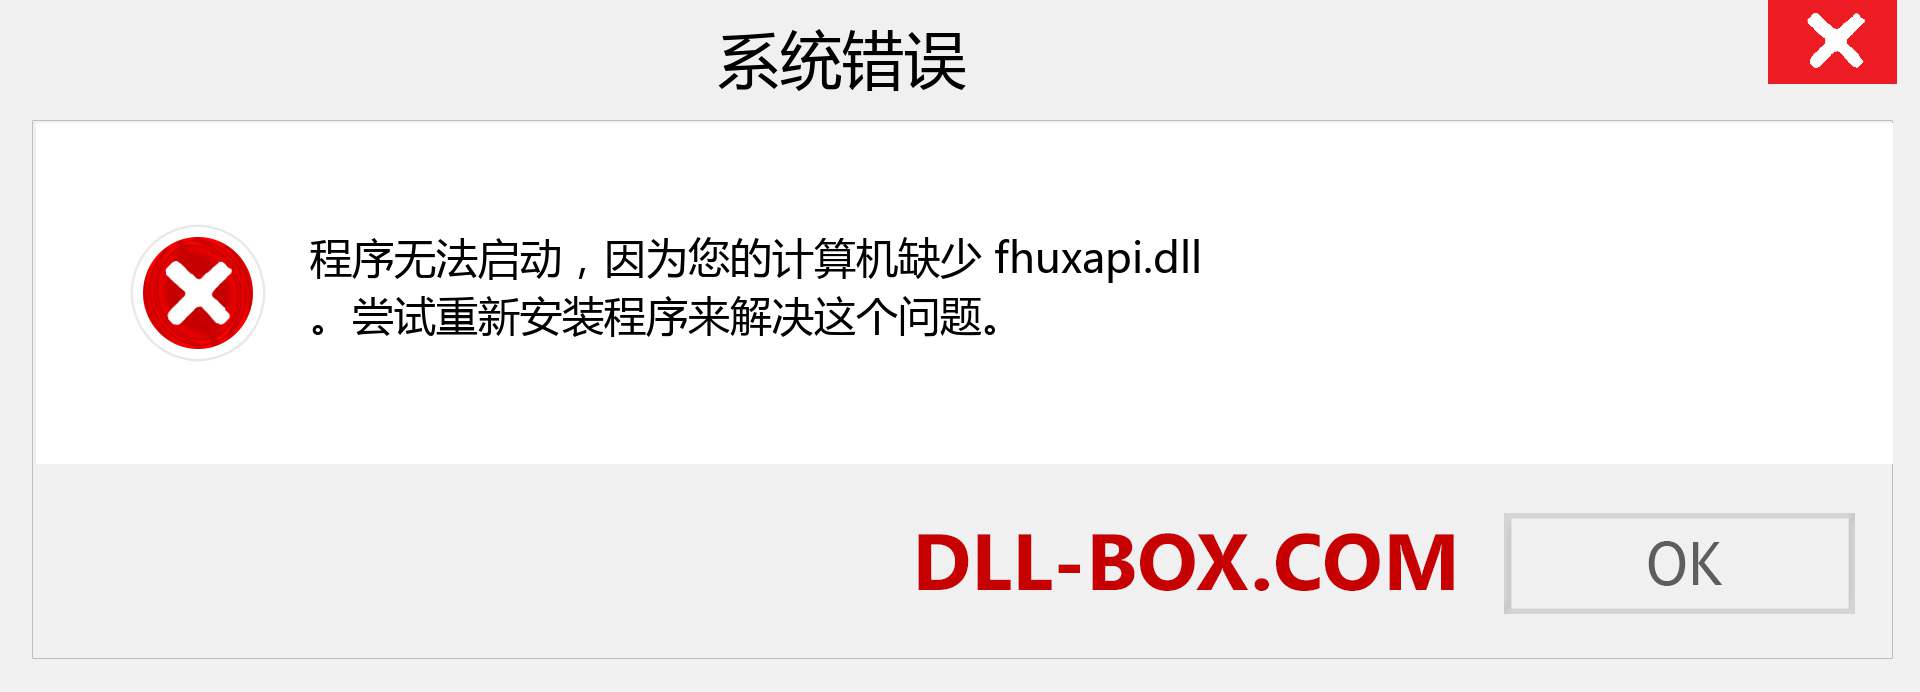 fhuxapi.dll 文件丢失？。 适用于 Windows 7、8、10 的下载 - 修复 Windows、照片、图像上的 fhuxapi dll 丢失错误